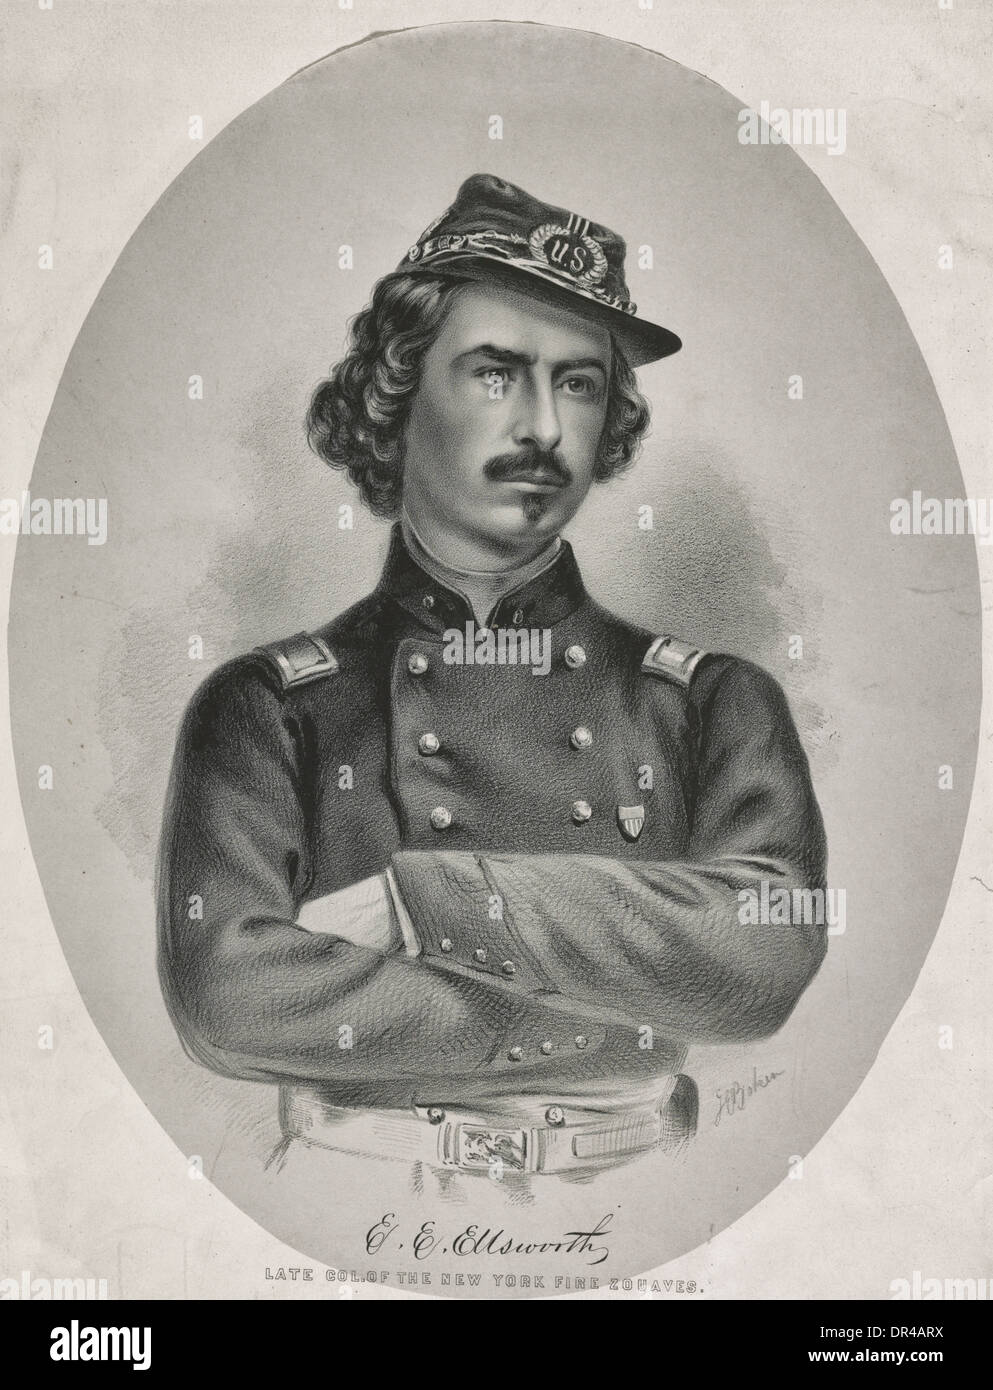 Elmer E. Ellsworth - diritto commesso e soldato, meglio conosciuta come la prima cospicua vittima della guerra civile americana. Maggio 1861 Foto Stock